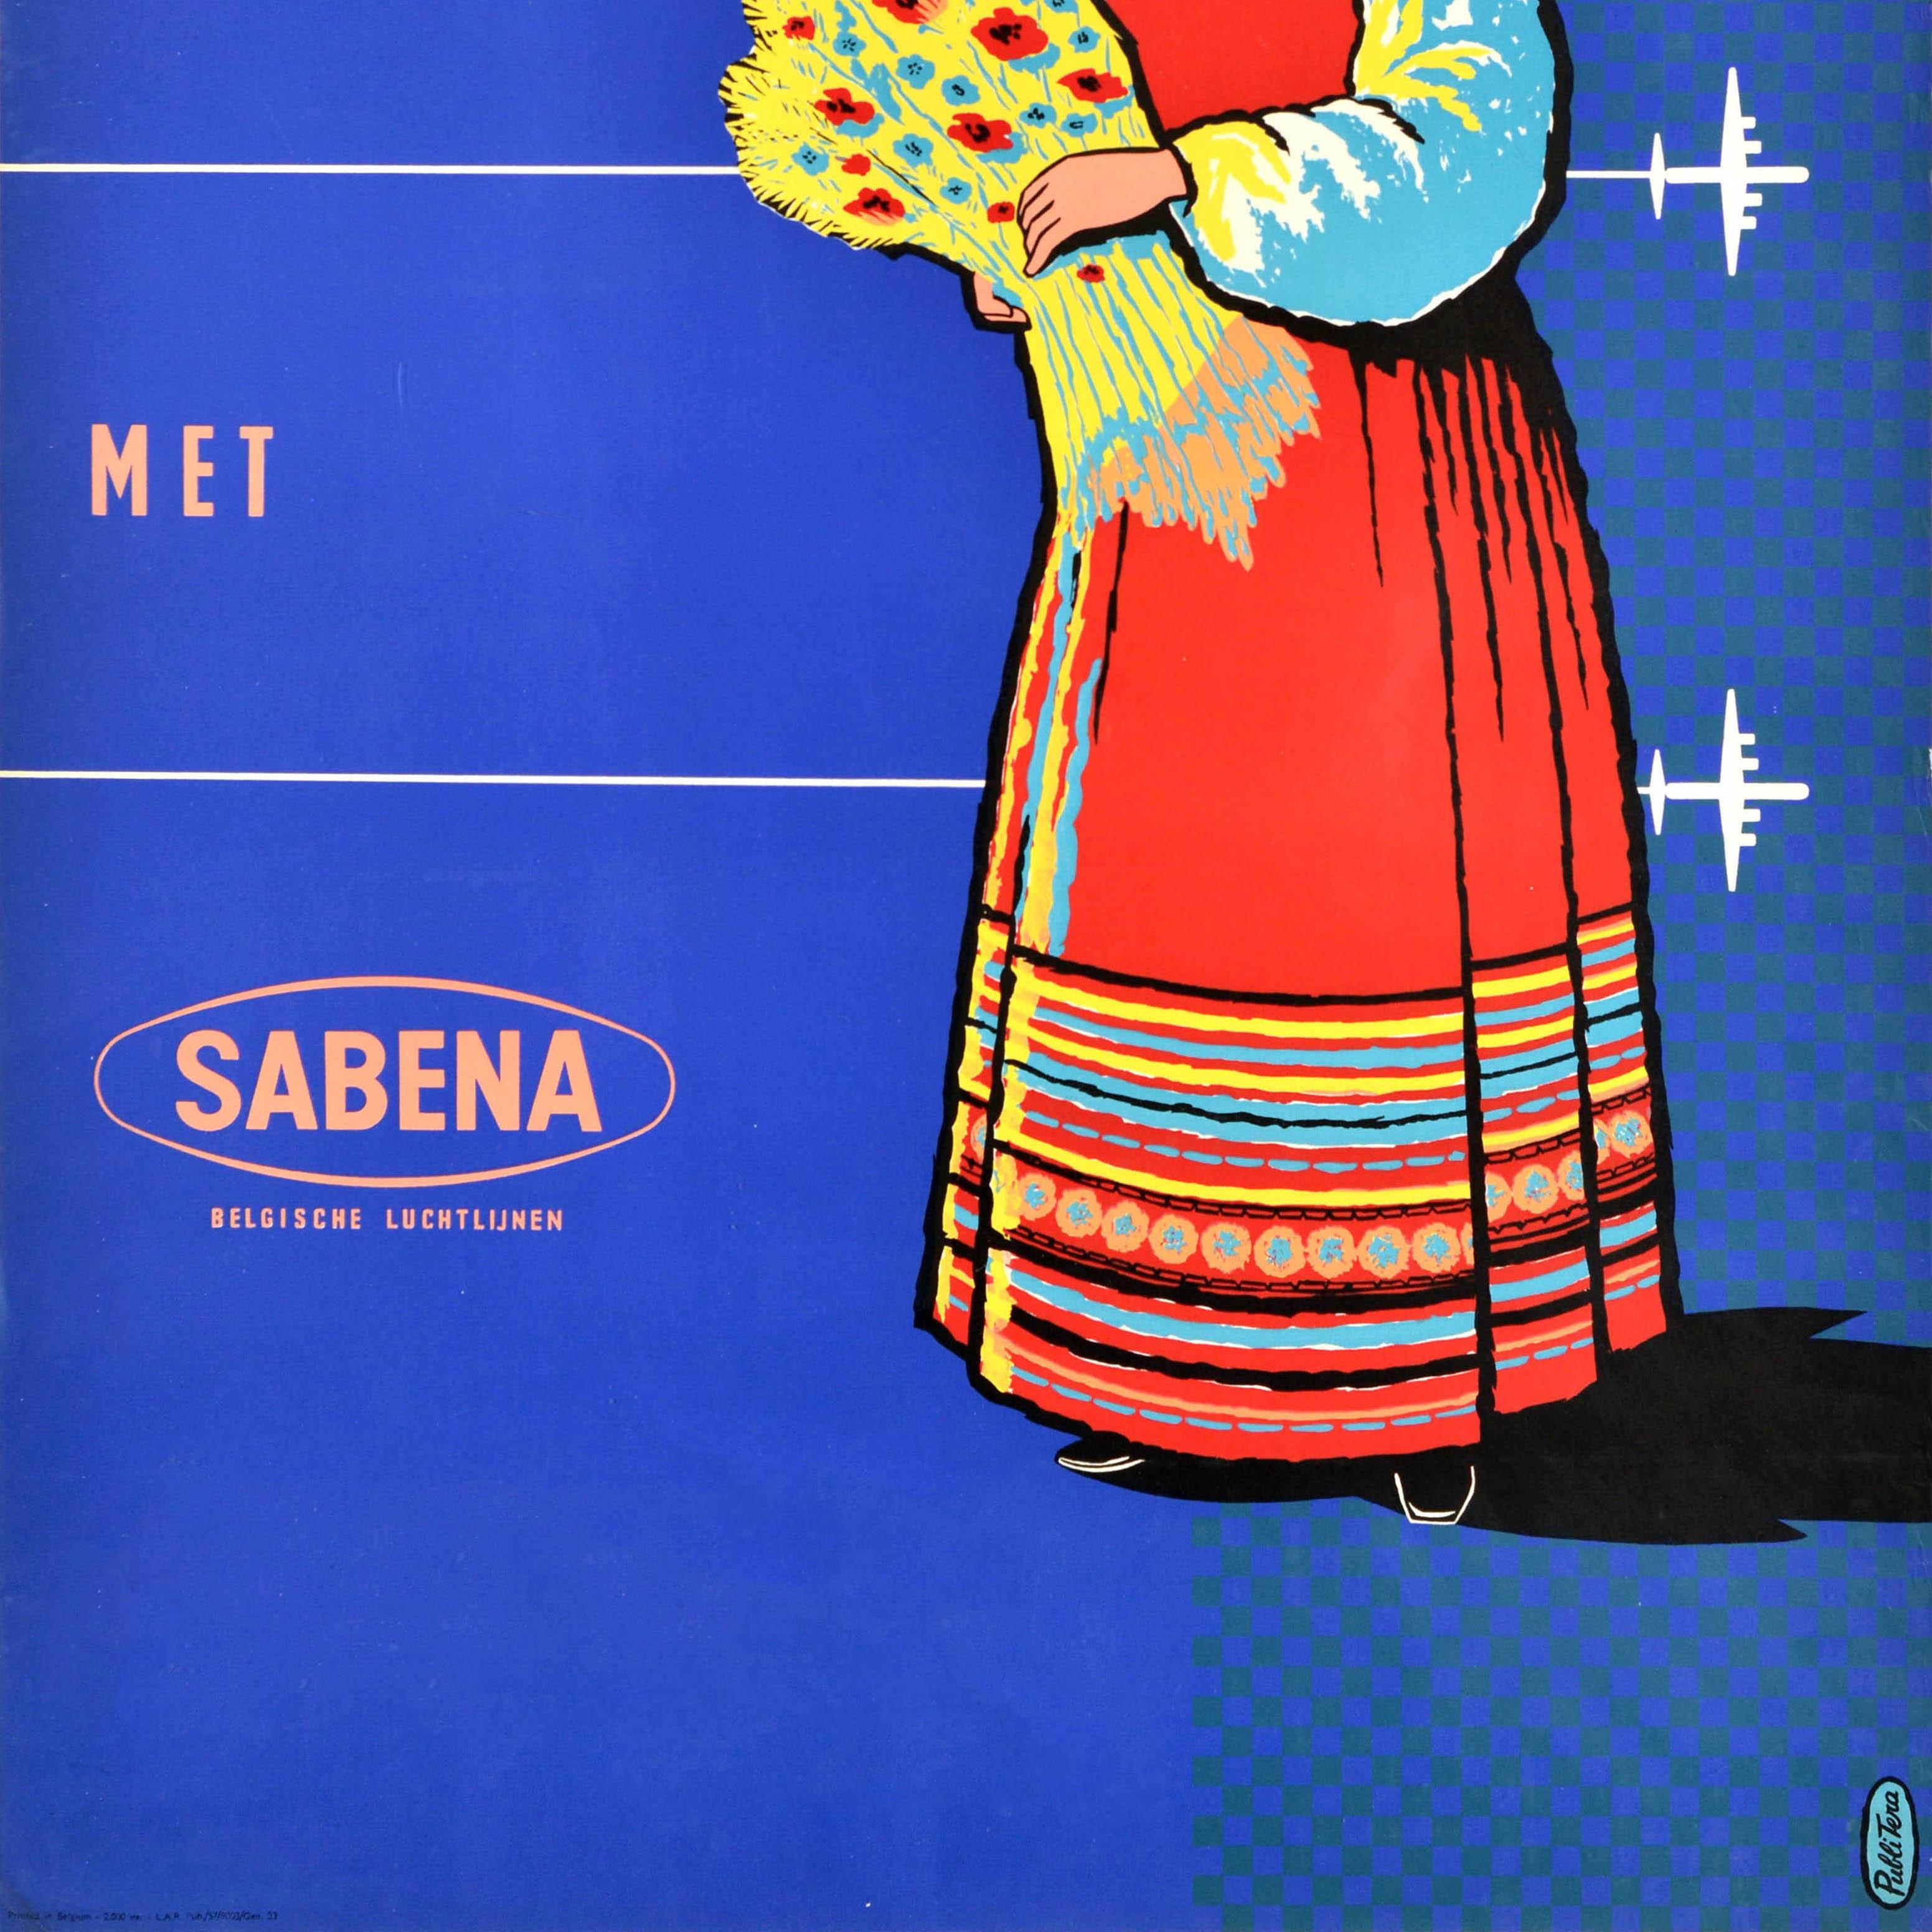 Affiche publicitaire originale de voyage - Naar Rusland met Sabena / To Russia with Sabena (la compagnie aérienne nationale de la Belgique de 1923 à 2001) présentant un dessin du milieu du siècle montrant une dame souriante portant des vêtements et